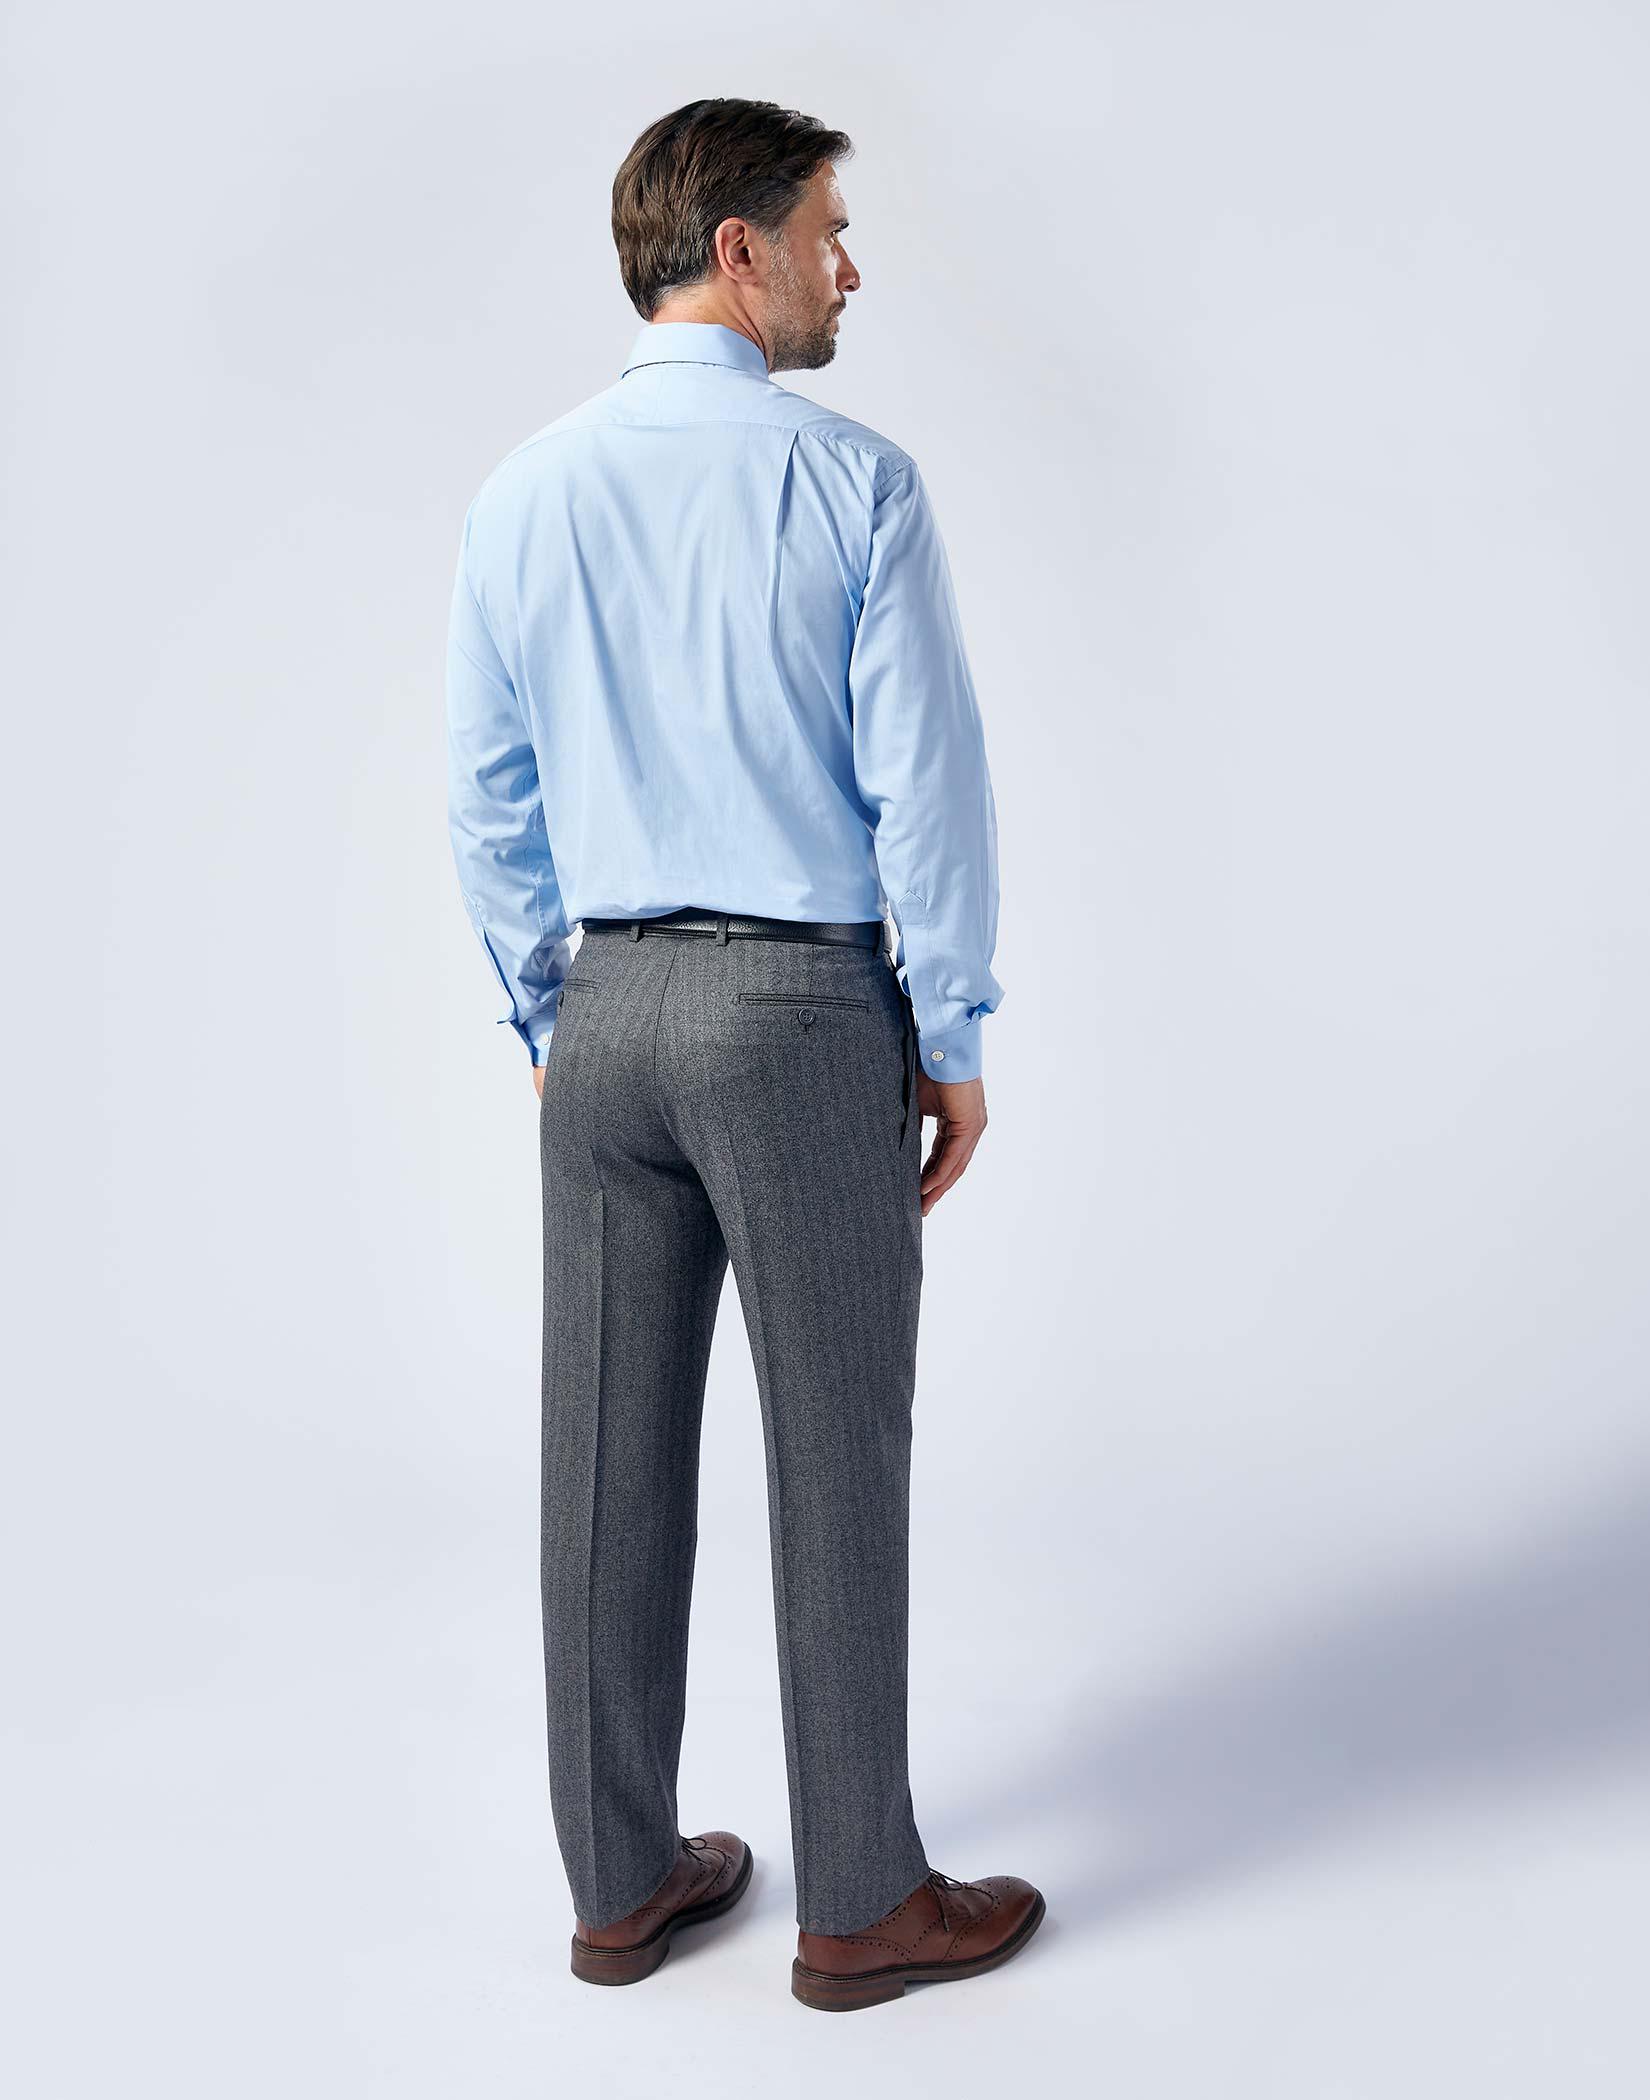 Buy Men Blue Regular Fit Formal Shirts Online  173029  Peter England